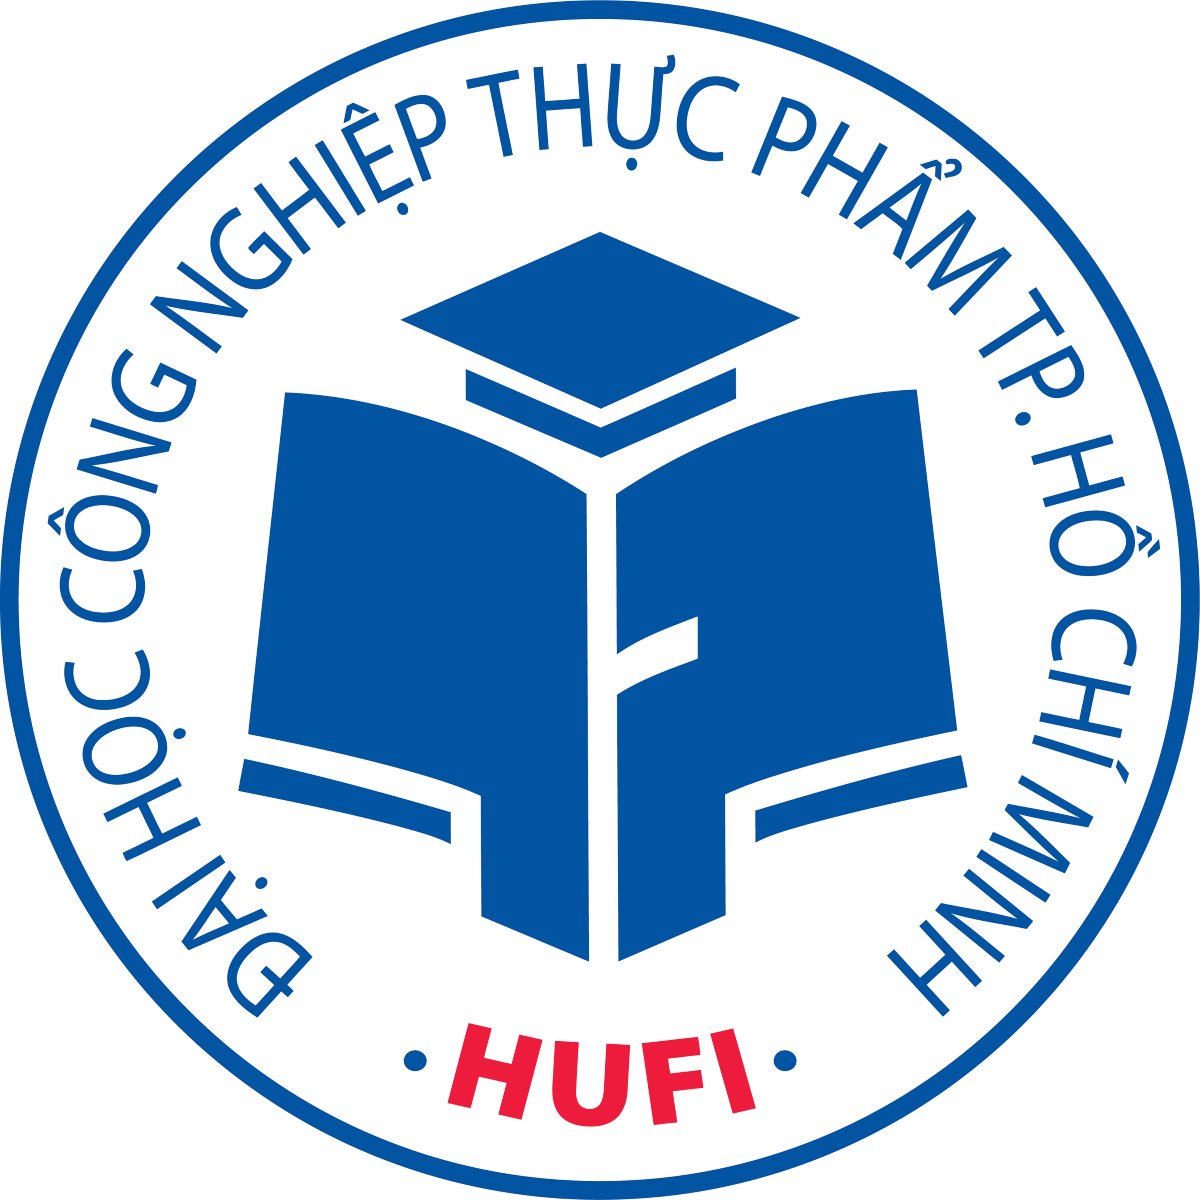 HUFI: Đại học Ngoại ngữ - Tin học - Đại học Huế HUFI là trường Đại học lớn và uy tín tại Việt Nam, cung cấp cho học sinh những khóa học đa dạng về nghiên cứu ngoại ngữ, tin học và nhiều chương trình giáo dục khác. HUFI đang trở thành nơi đào tạo nguồn nhân lực chất lượng cao cho xã hội và khẳng định vị trí của mình trong cộng đồng giáo dục quốc tế.